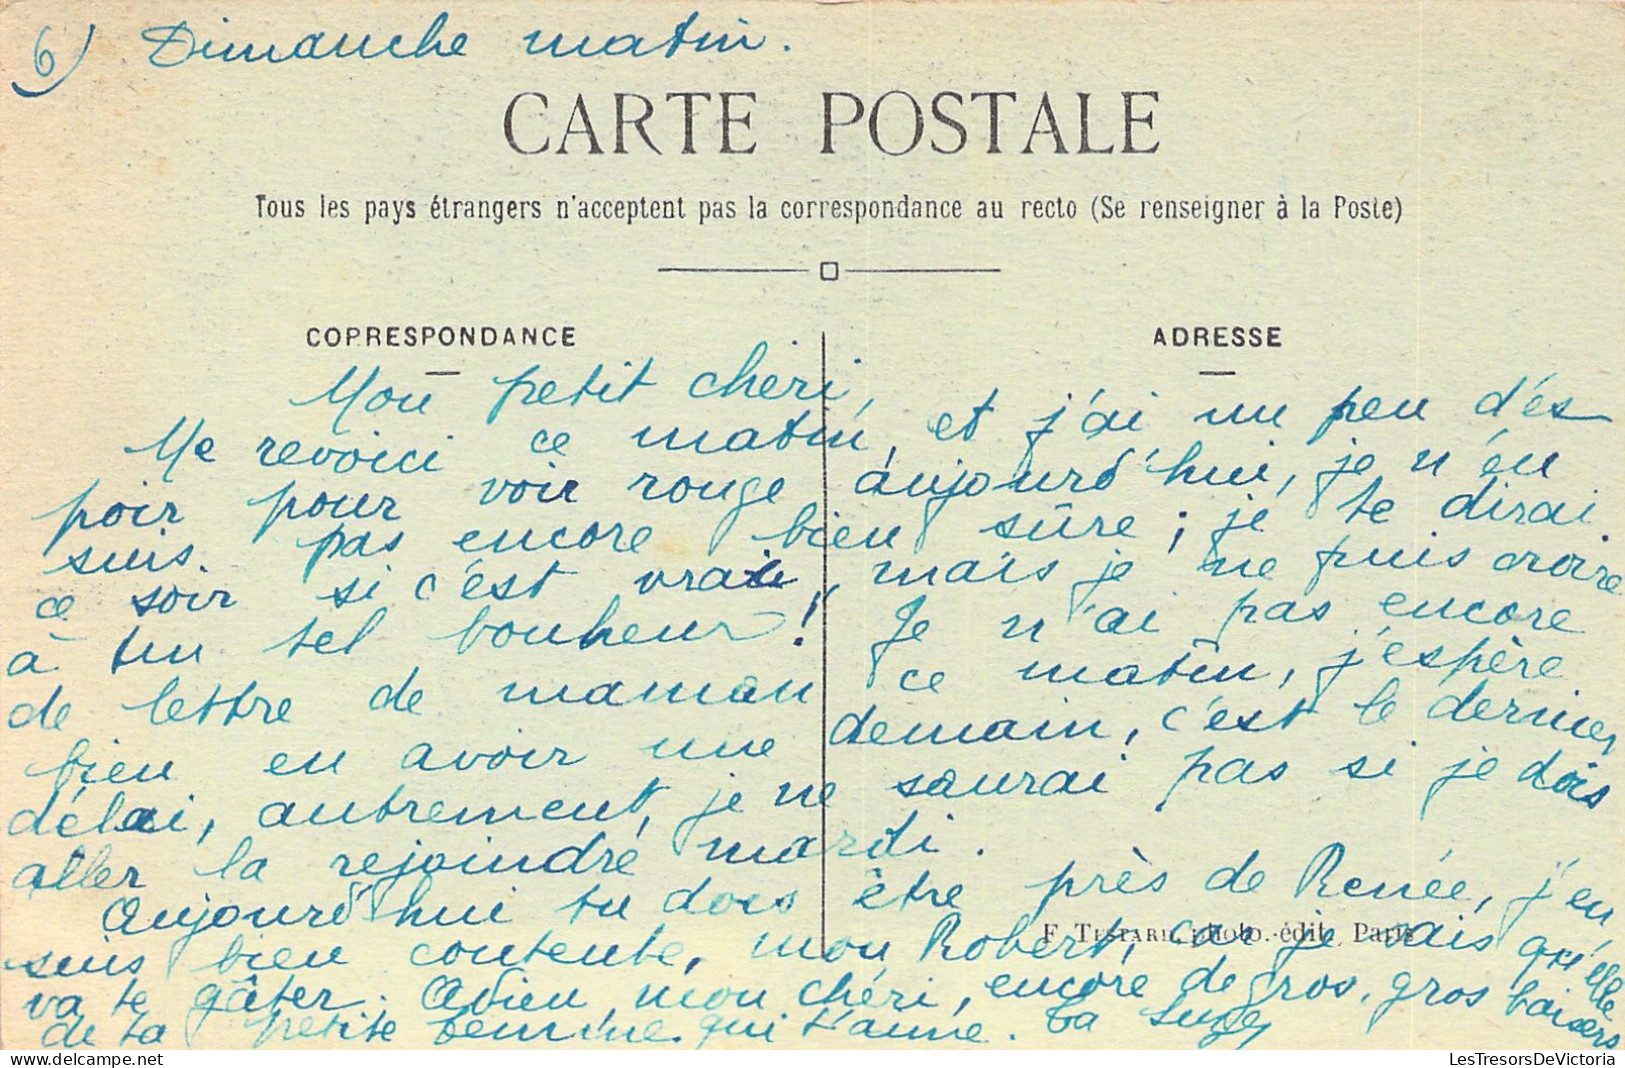 FRANCE - Parc St Maur - La Gare - Carte Postale Ancienne - Other & Unclassified